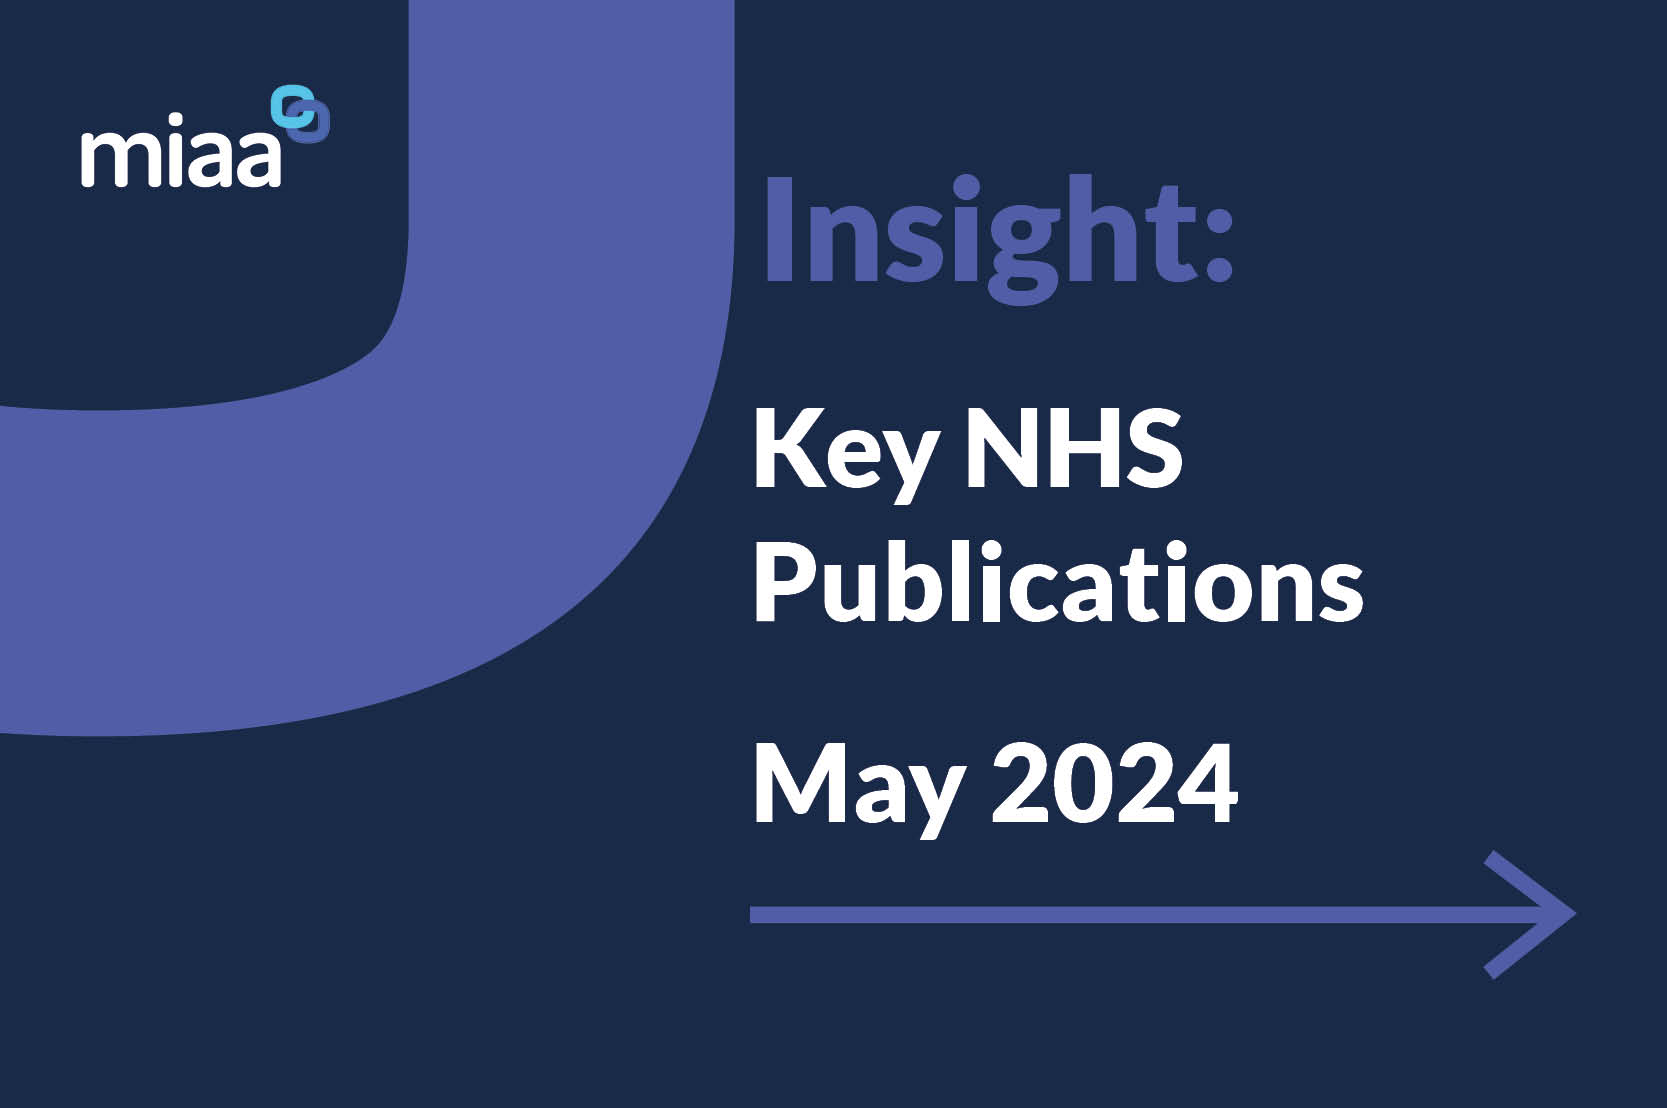 Key NHS Publications - May 2024